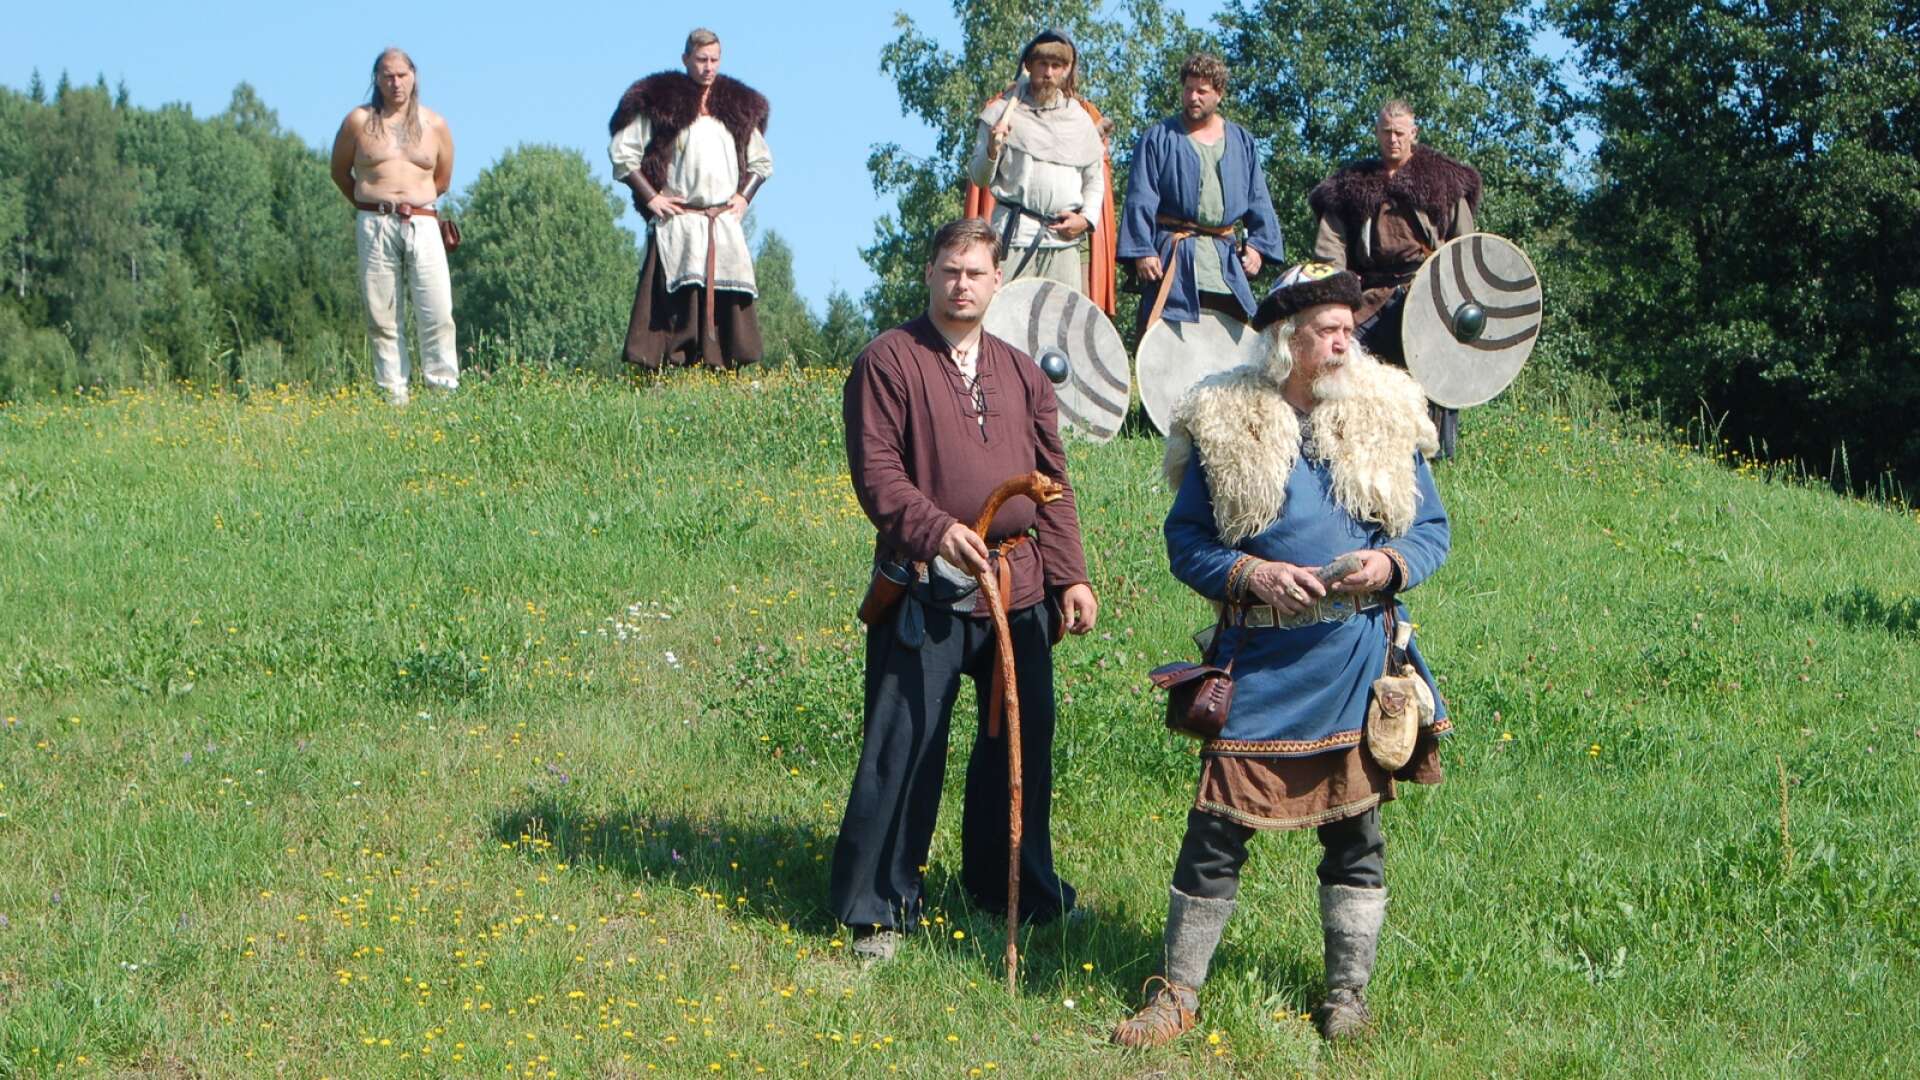 Värmlands Vikingacenter drivs ideellt av cirka 200 aktiva medlemmar. Här kan man fly nutiden en stund och kliva in i miljön på vikingatiden, en garanterad succé för de yngre!